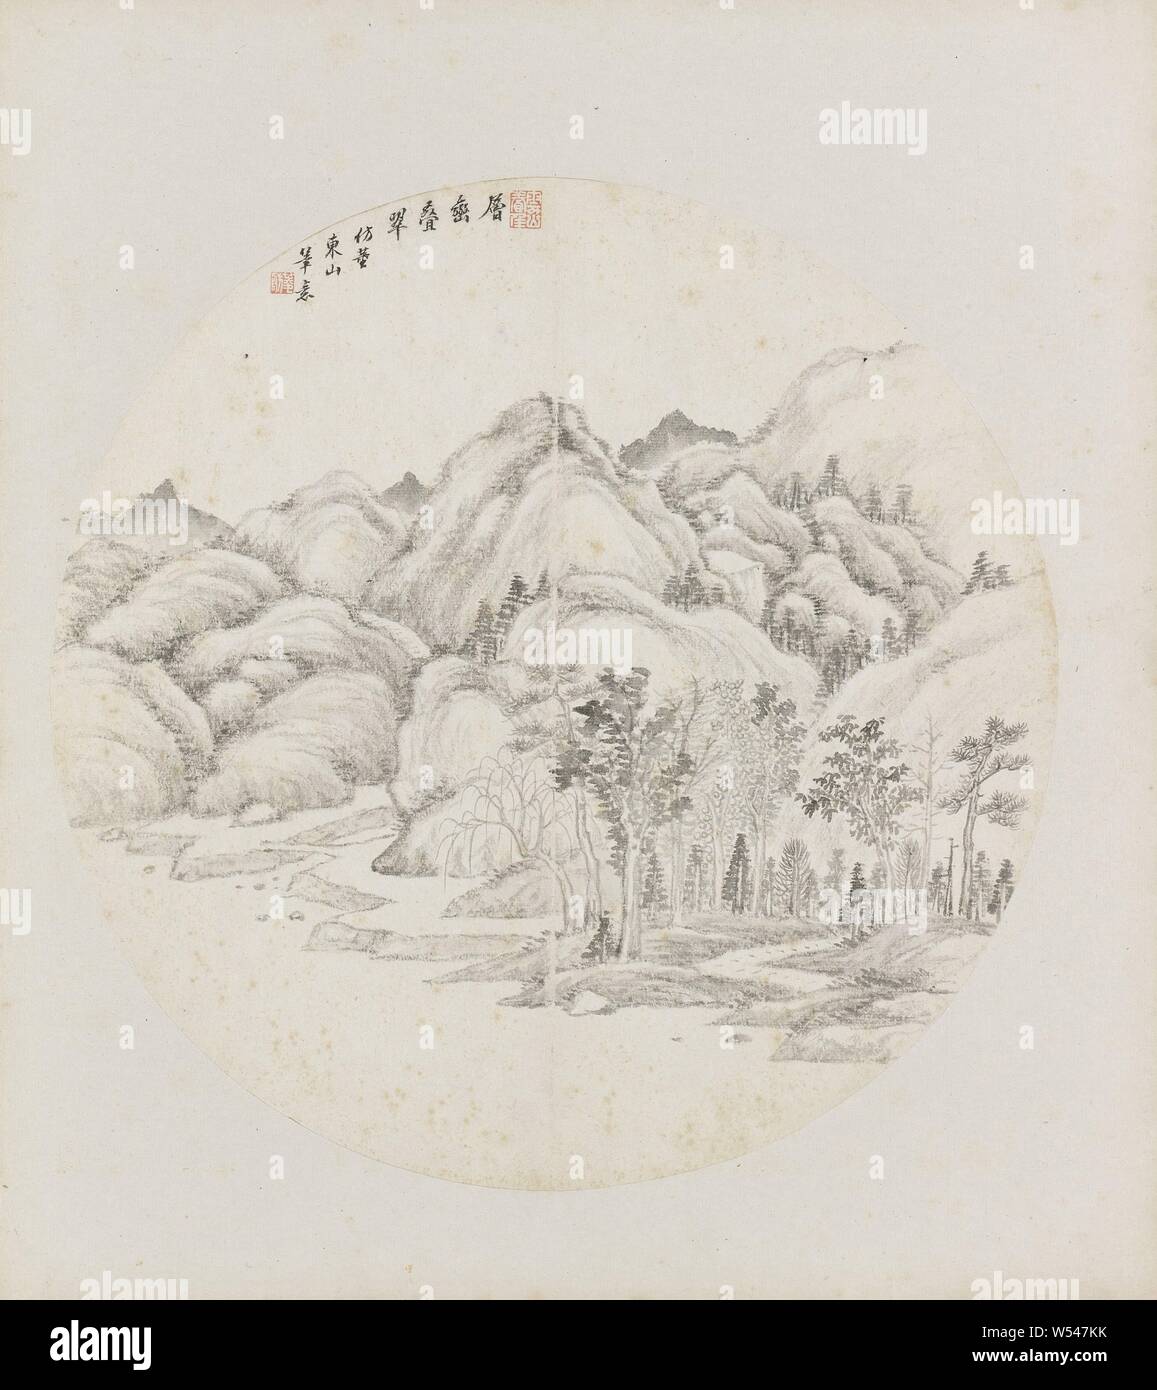 Album Leaf, Album Leaf con un paesaggio. Appartiene a due album con 24 paesaggi nello stile di vari maestri. Hui Nian, Cina, 1850 - 1900, inchiostro e carta, h 33 cm × W 66 cm Foto Stock